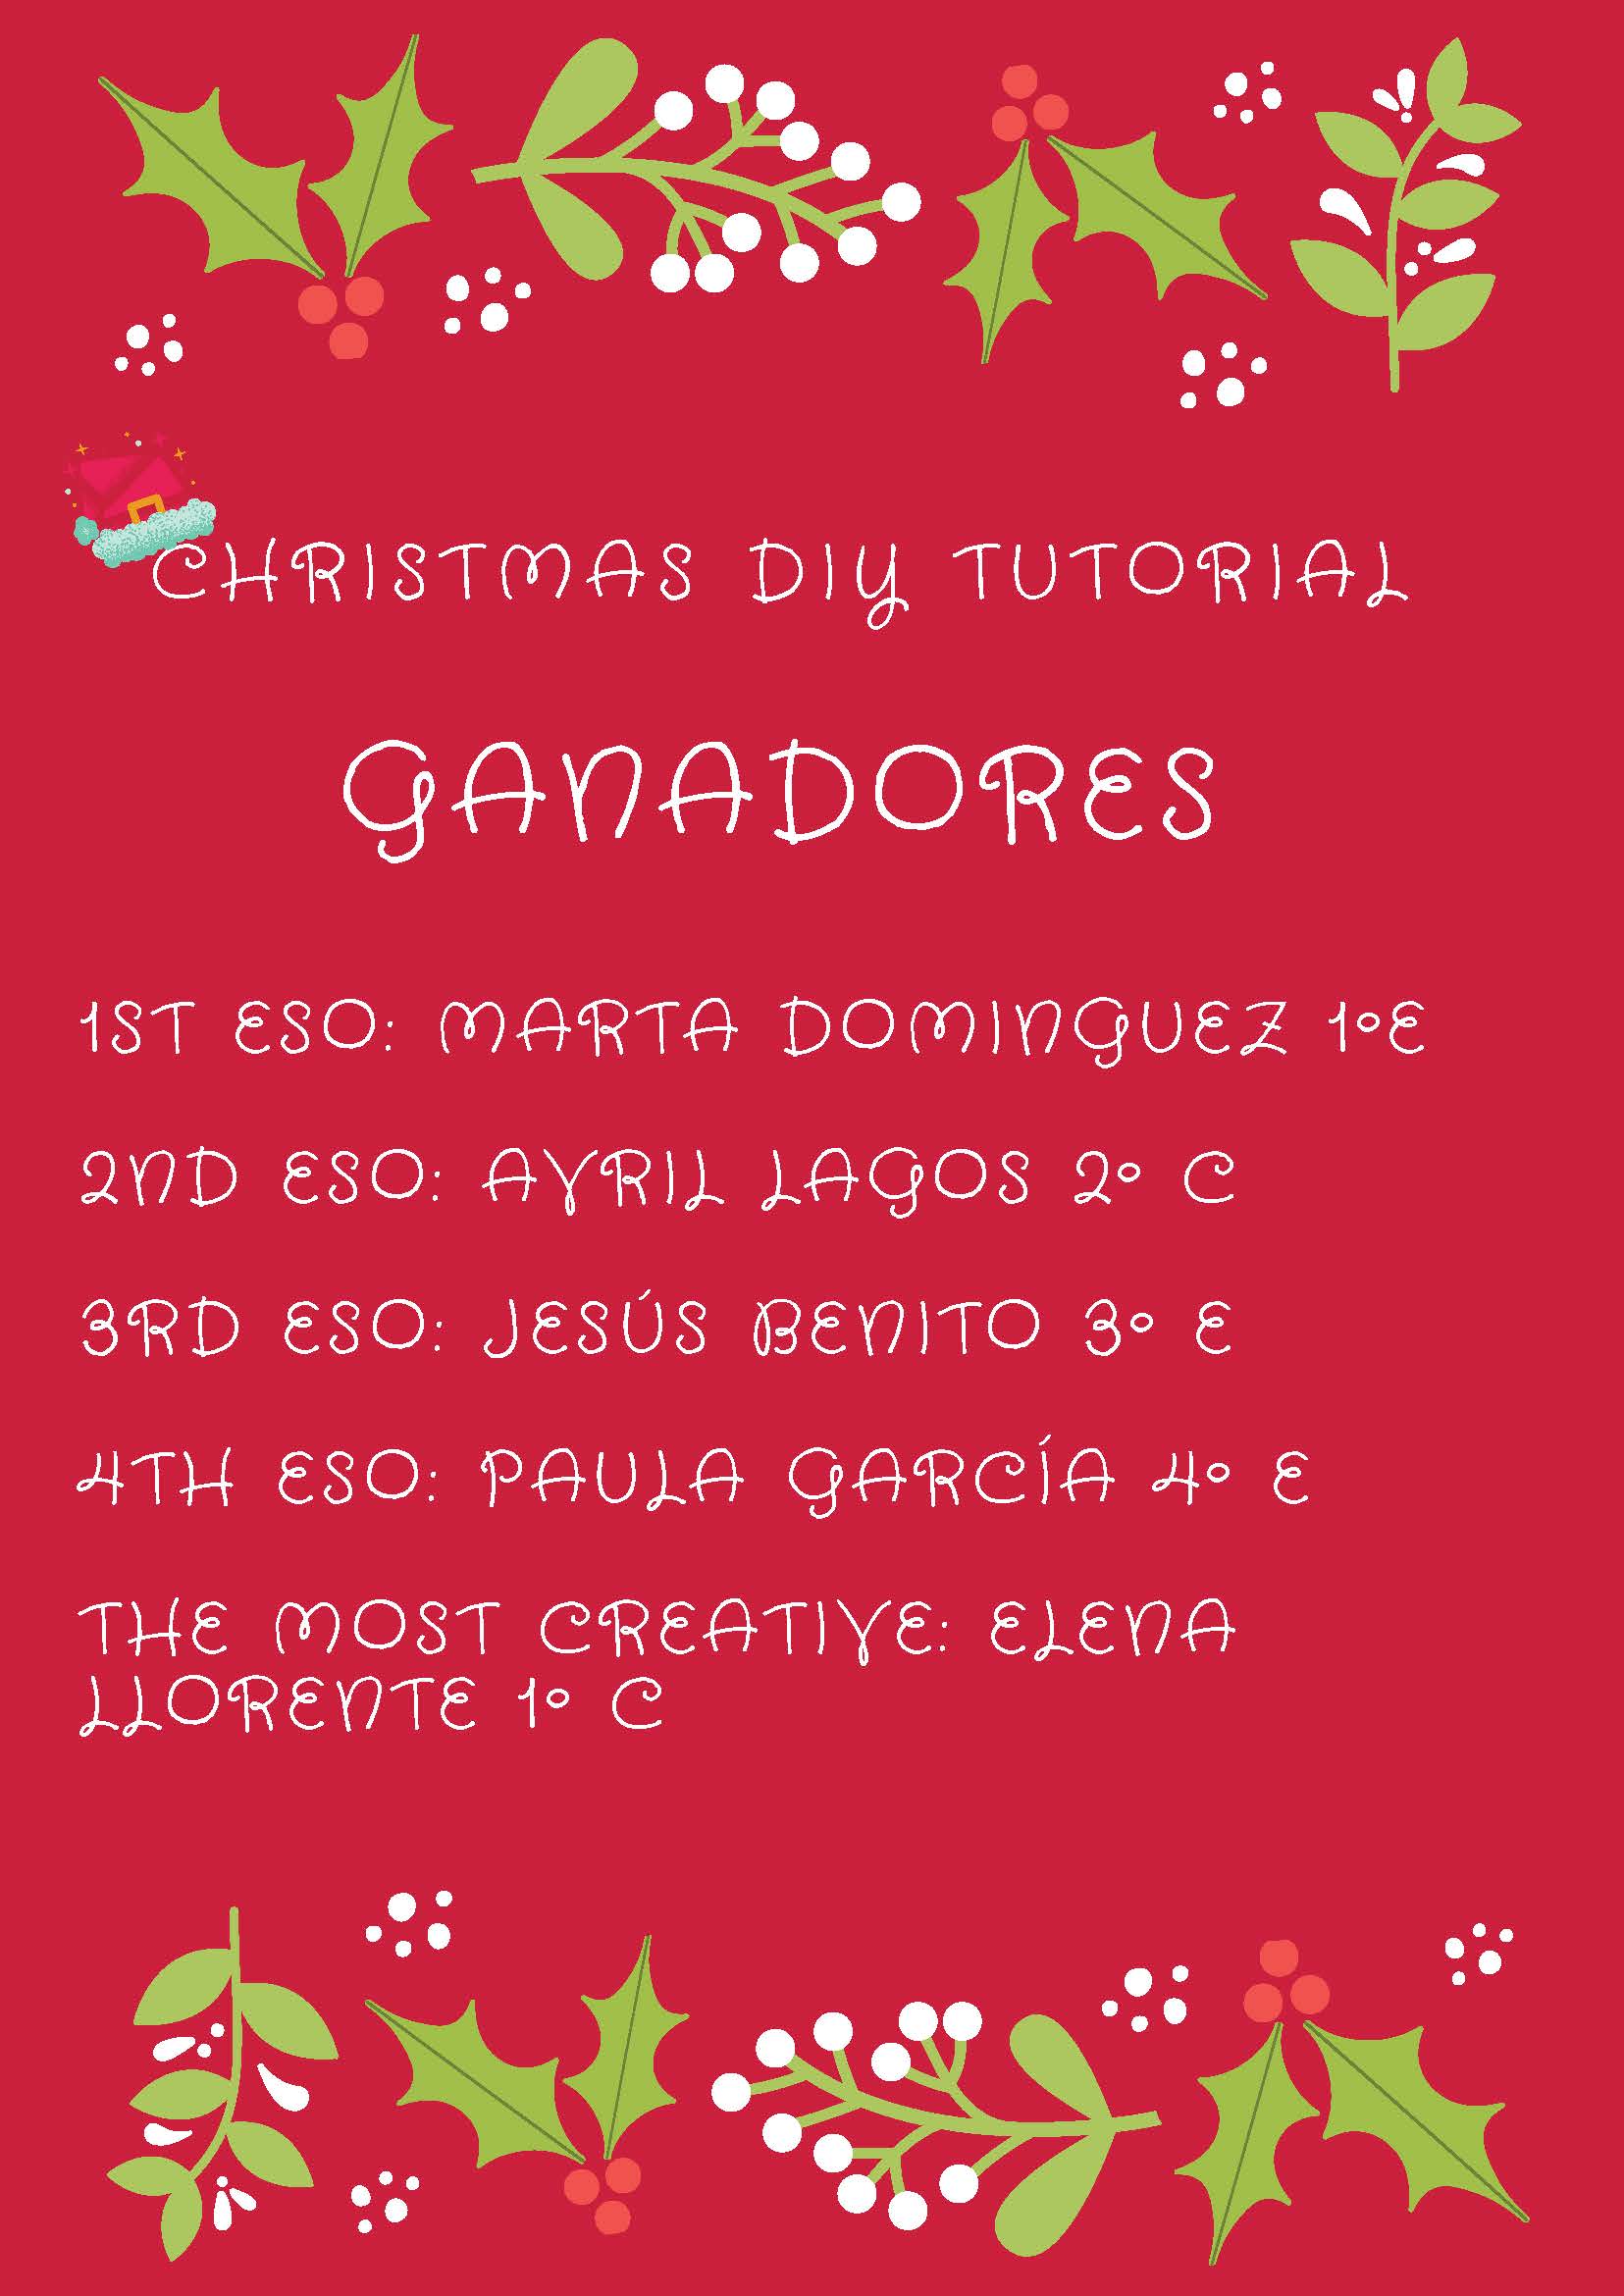 Christmas_DIY_tutorial_ganadores_navidad